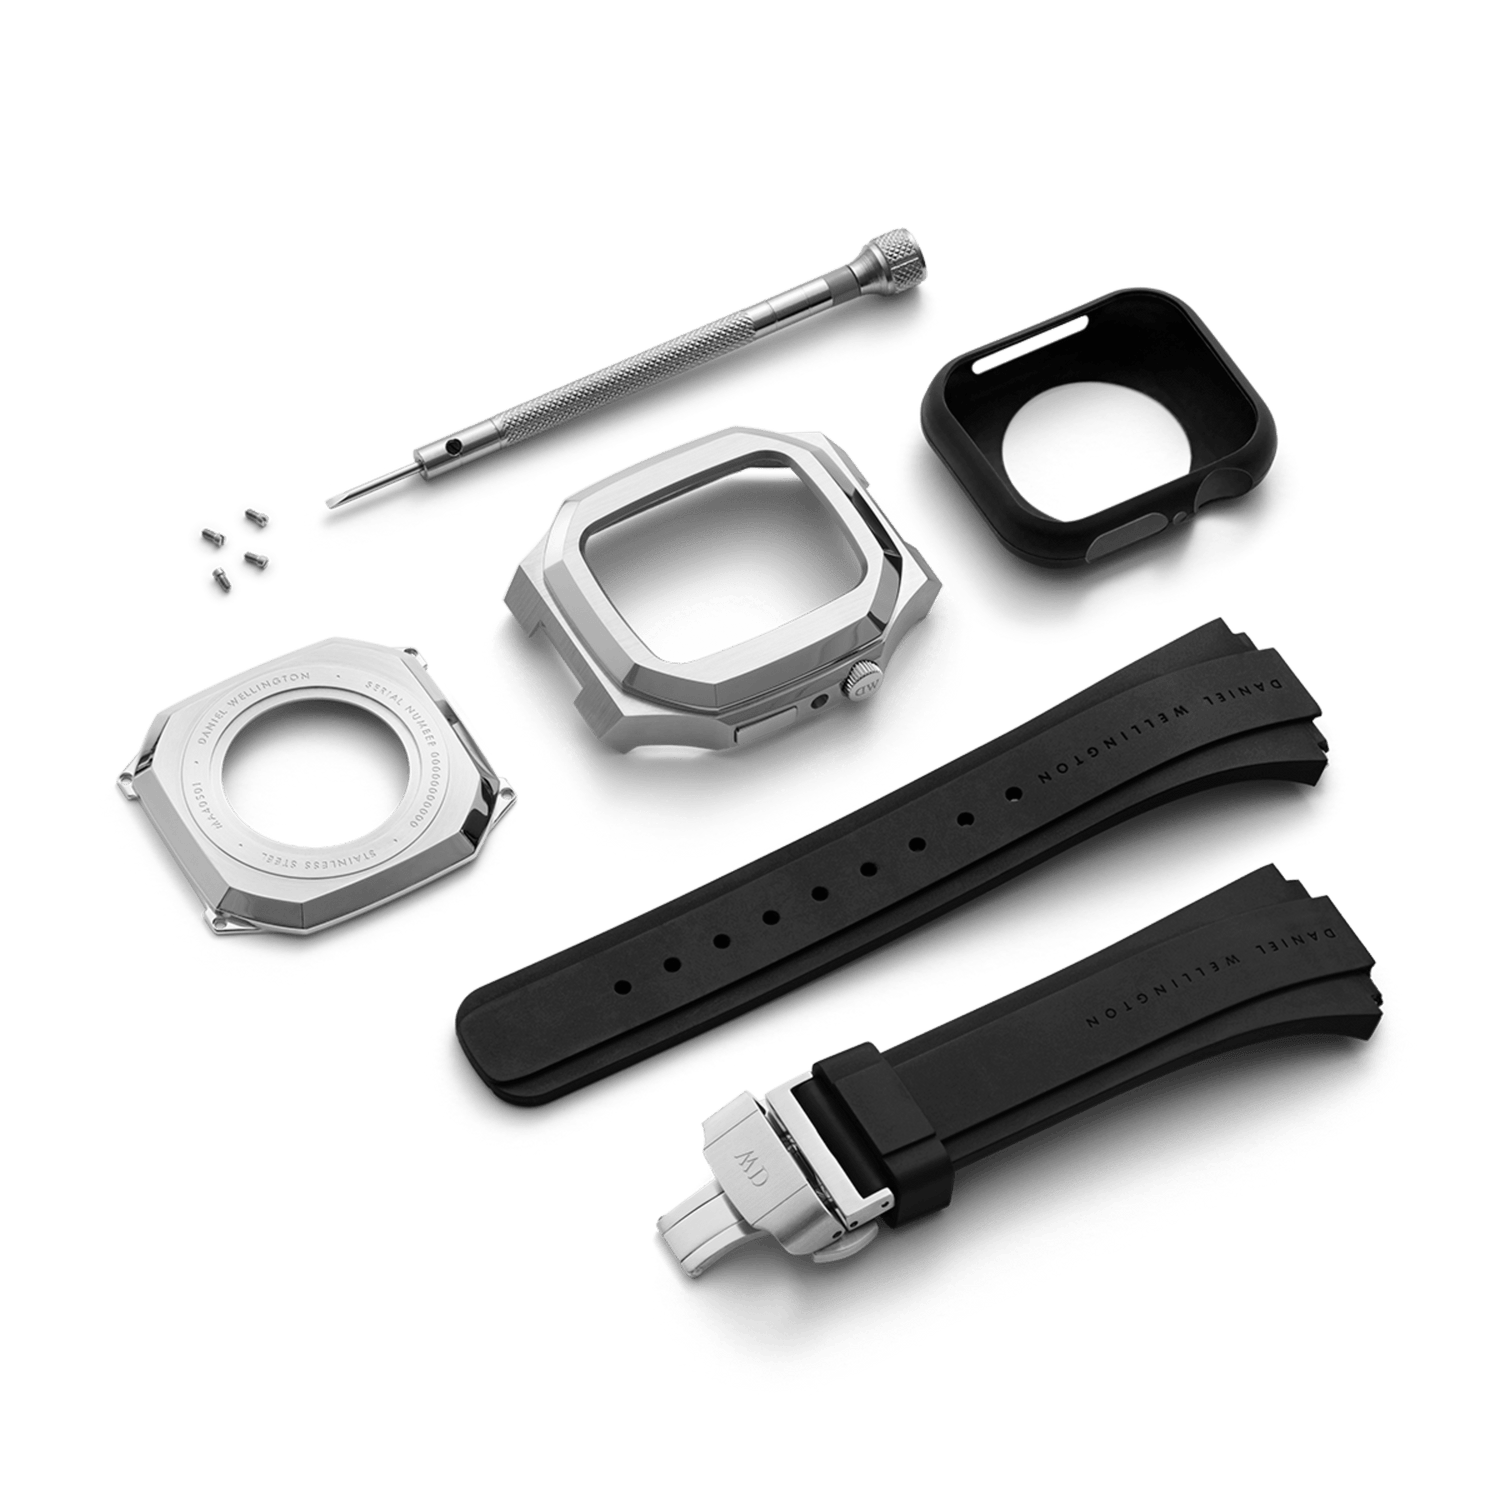 Smartwatch Case - Apple Watch Case Silver - Size 40mm | DW 